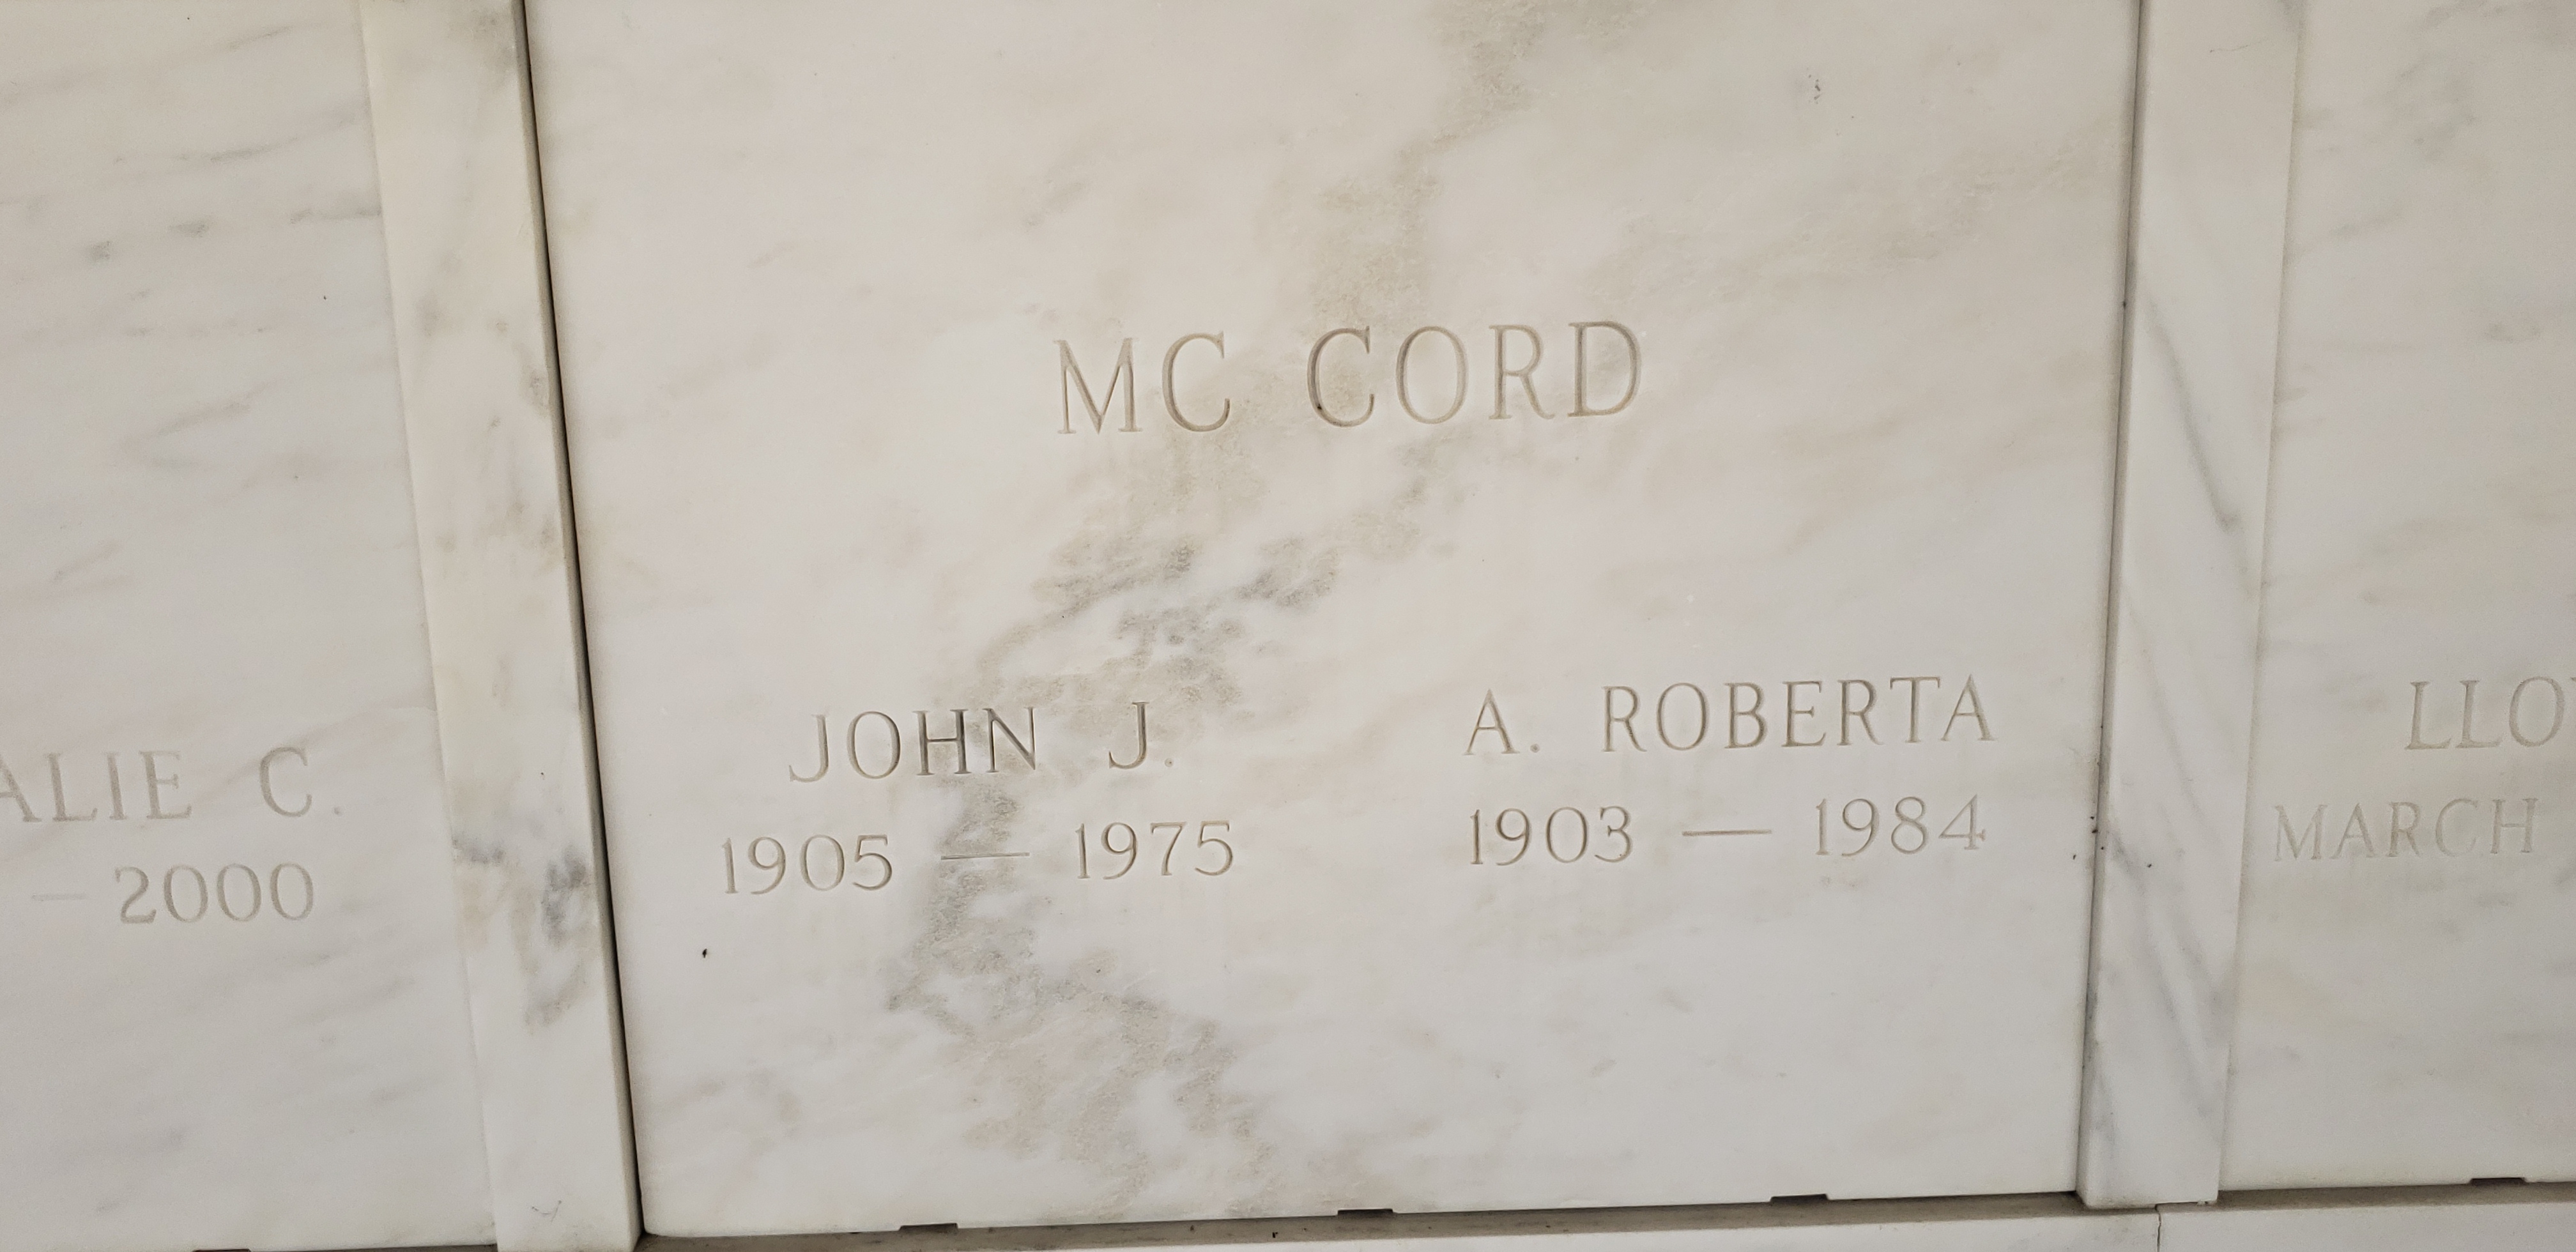 John J Mc Cord